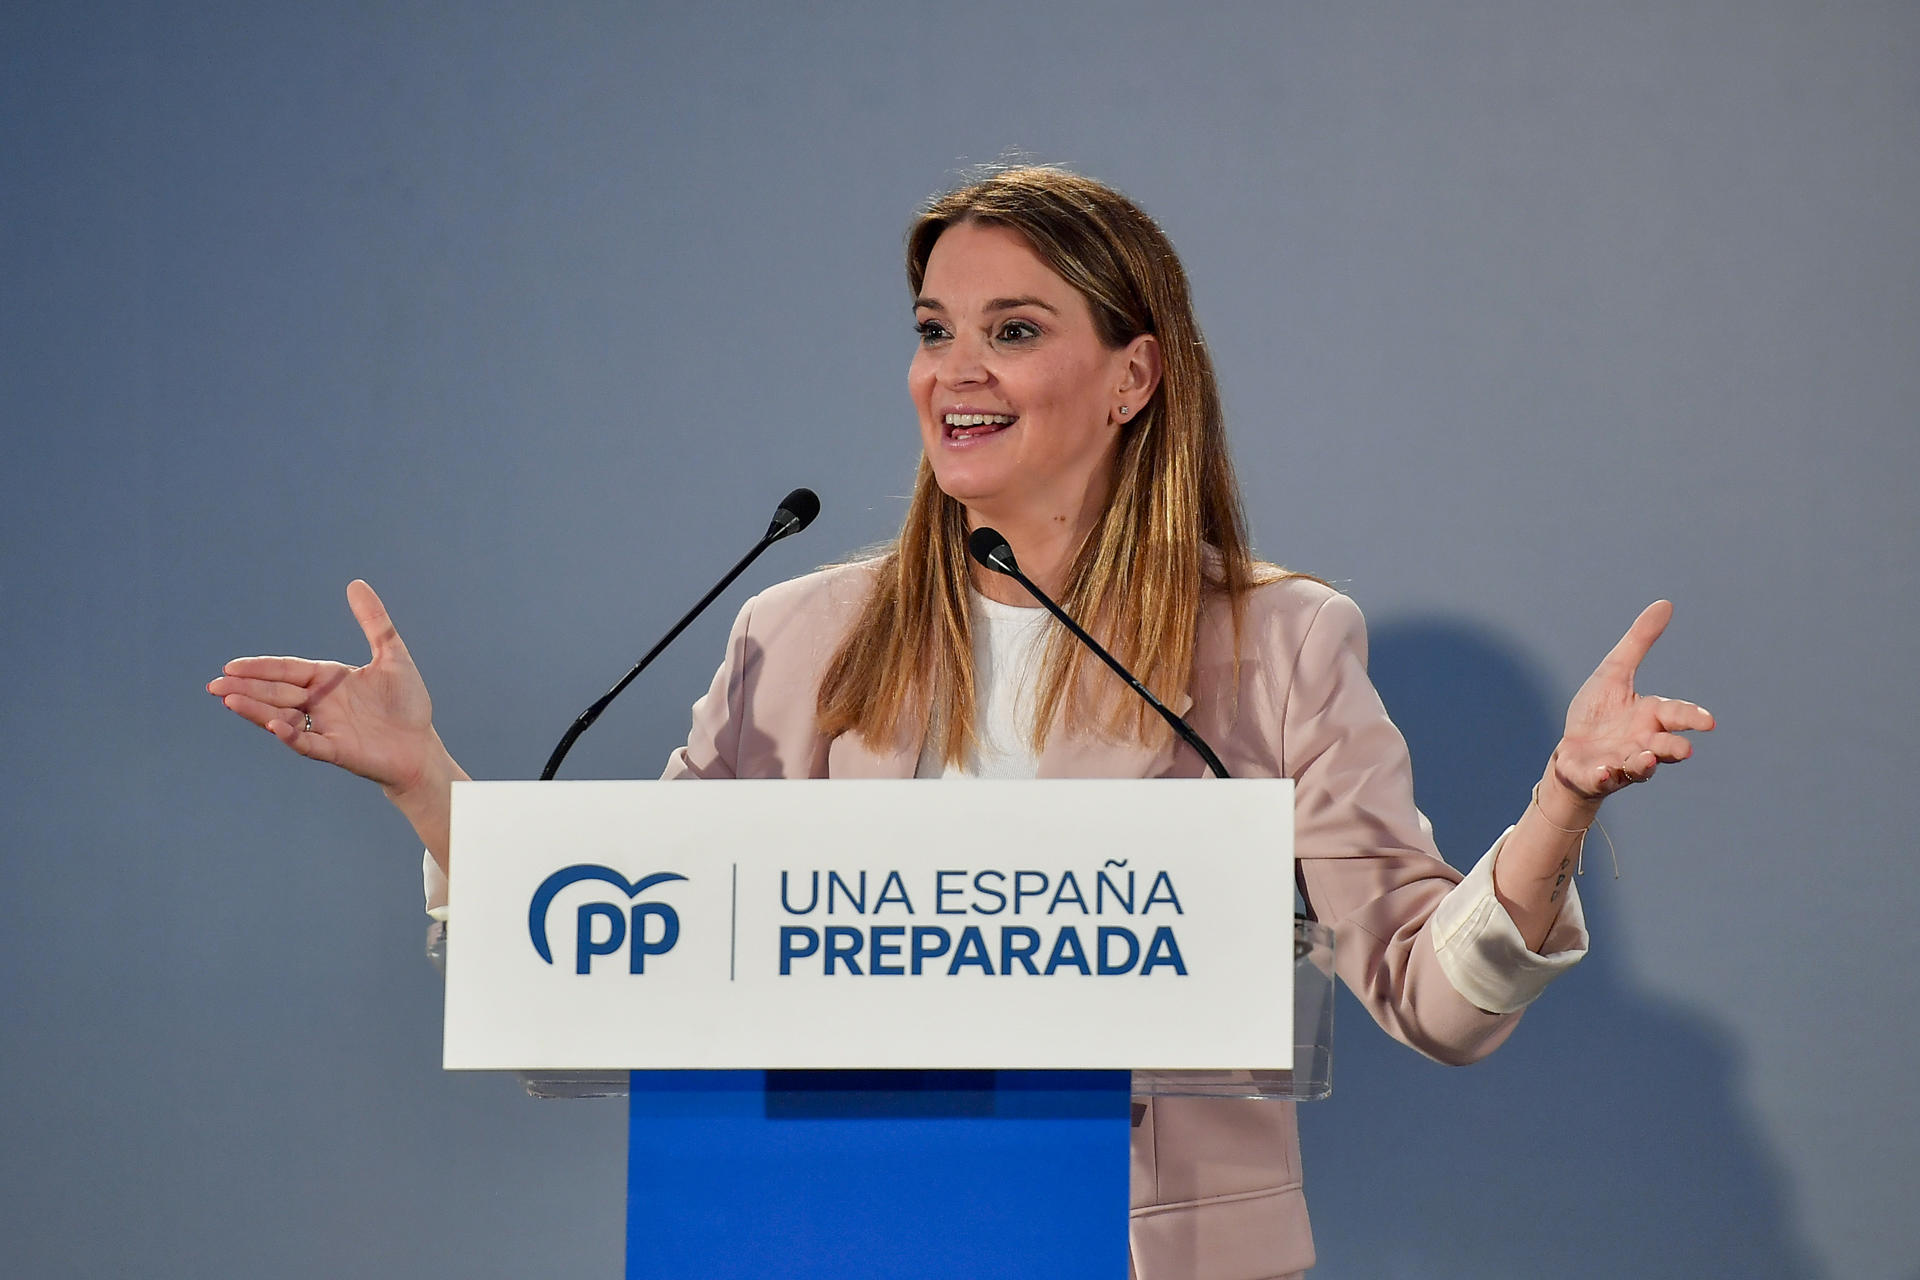 La candidata al Govern Balear, Marga Prohens interviene durante la reunión de la junta directiva del Partido Popular Balear del pasado jueves en Playa de Palma.- EFE/MIQUEL A. BORRÁS